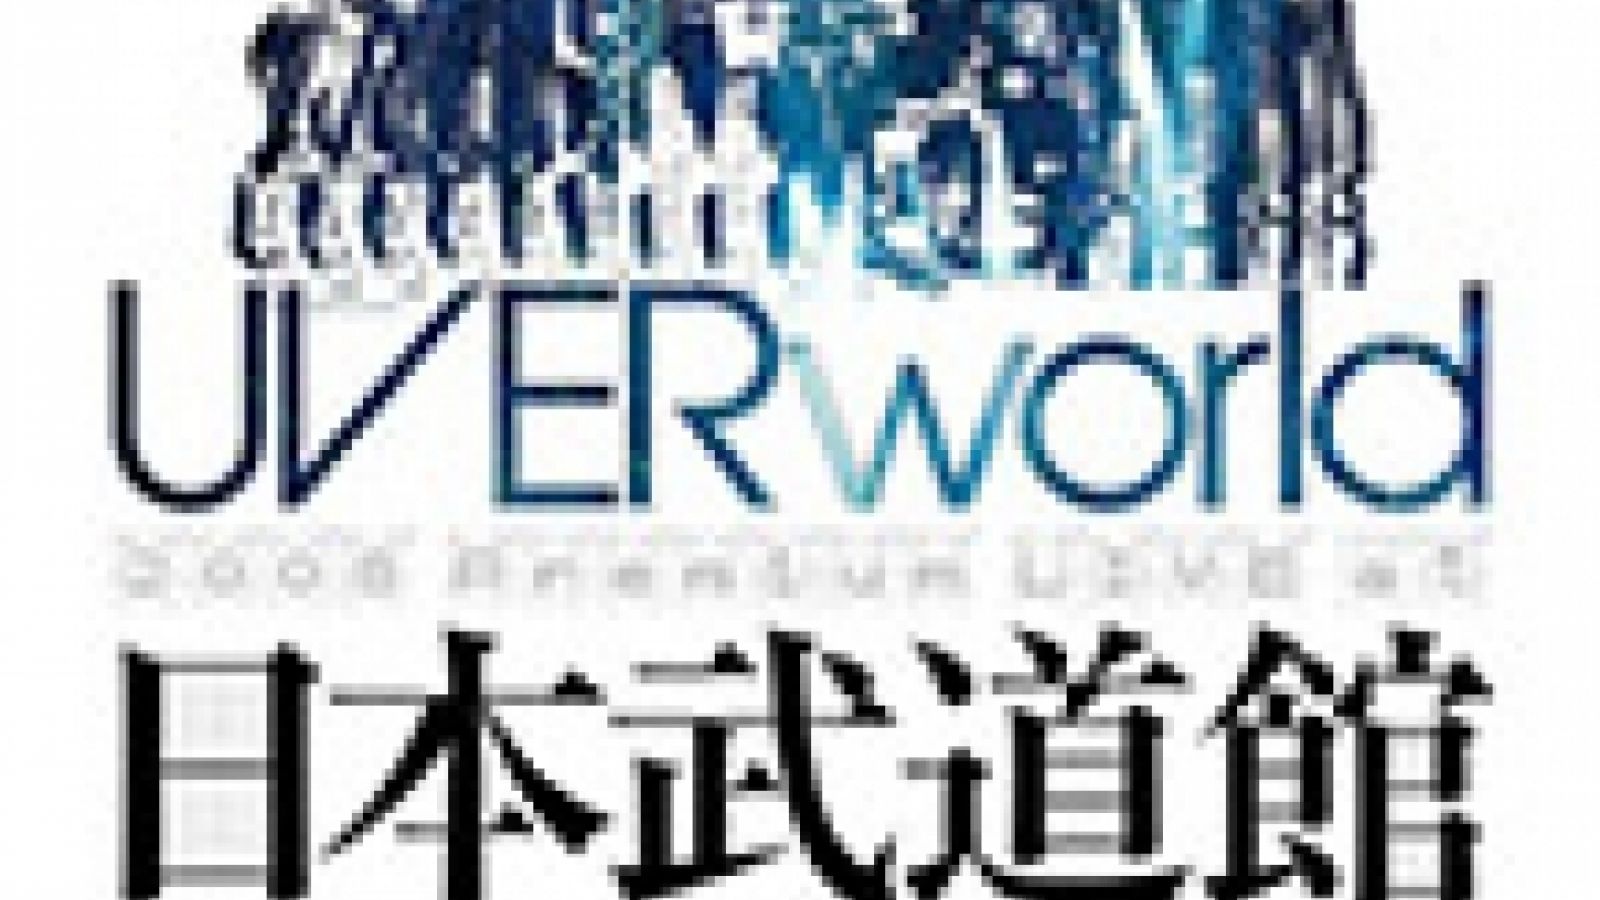 UVERworlds Weihnachtskonzert auf DVD © JaME - Oricon